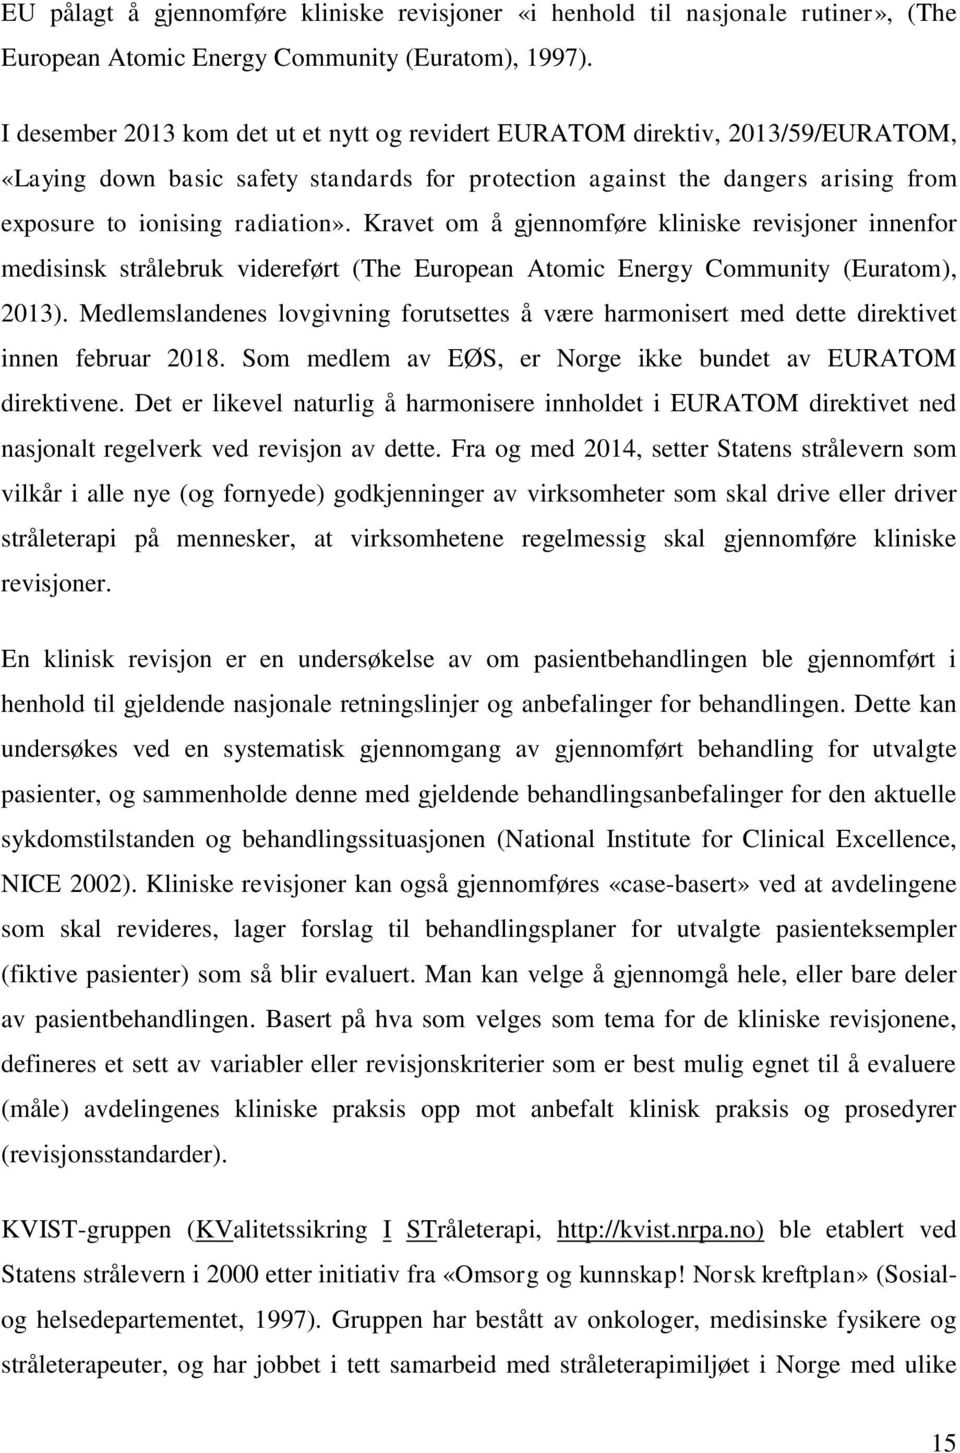 Kravet om å gjennomføre kliniske revisjoner innenfor medisinsk strålebruk videreført (The European Atomic Energy Community (Euratom), 2013).